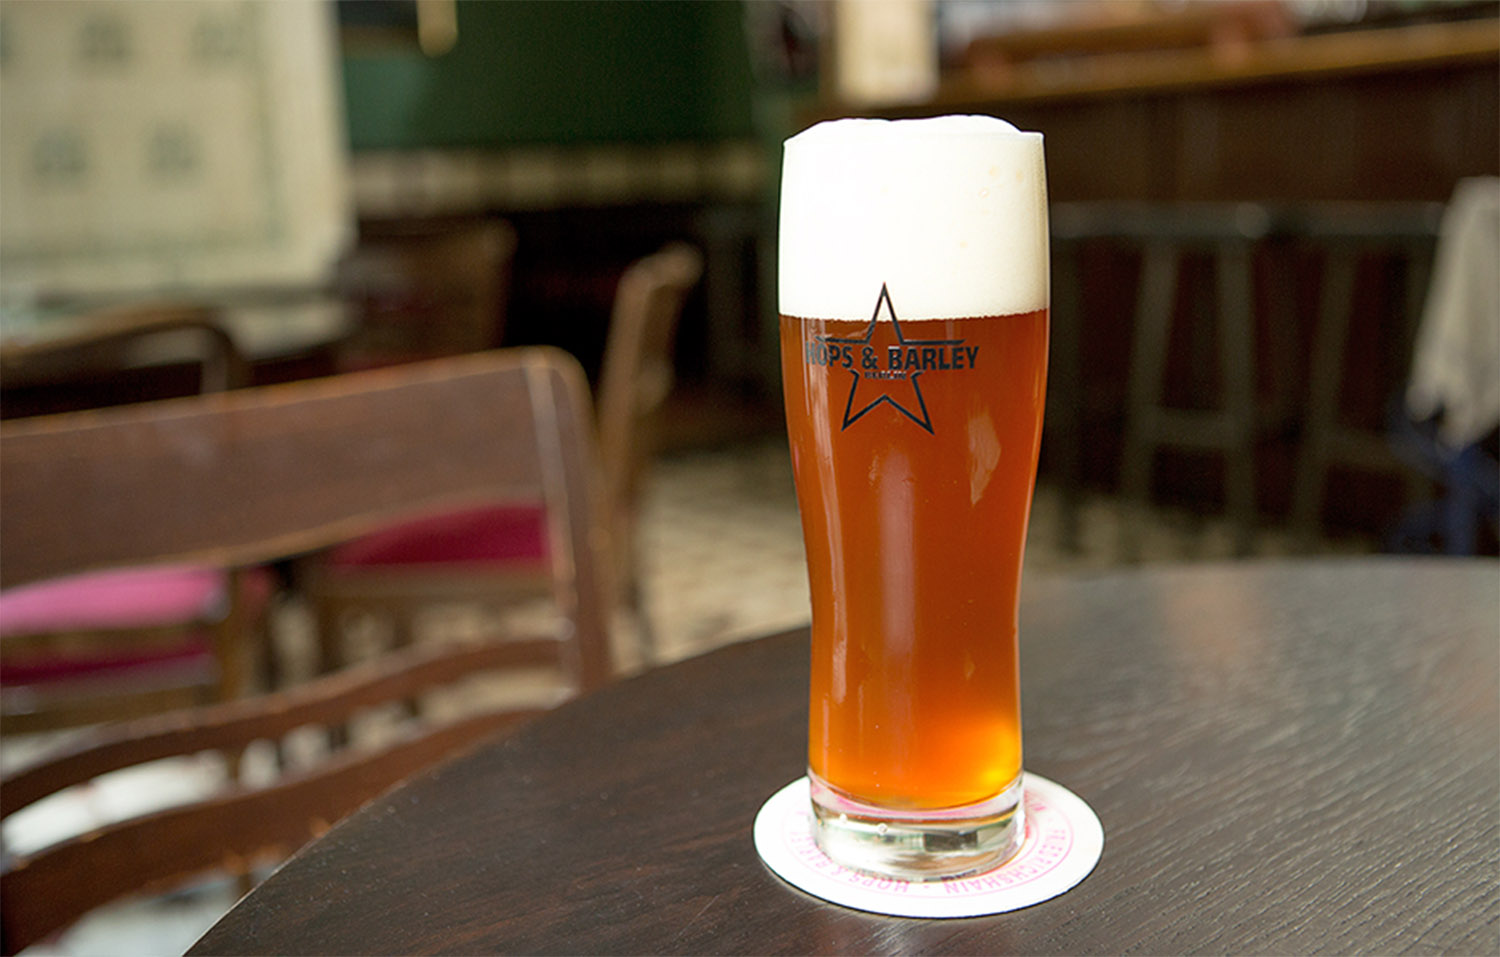 Hops & Barley ist eine gute Bar in Friedrichshain mit selbstgebrautem Bier. Foto: Marco Baass